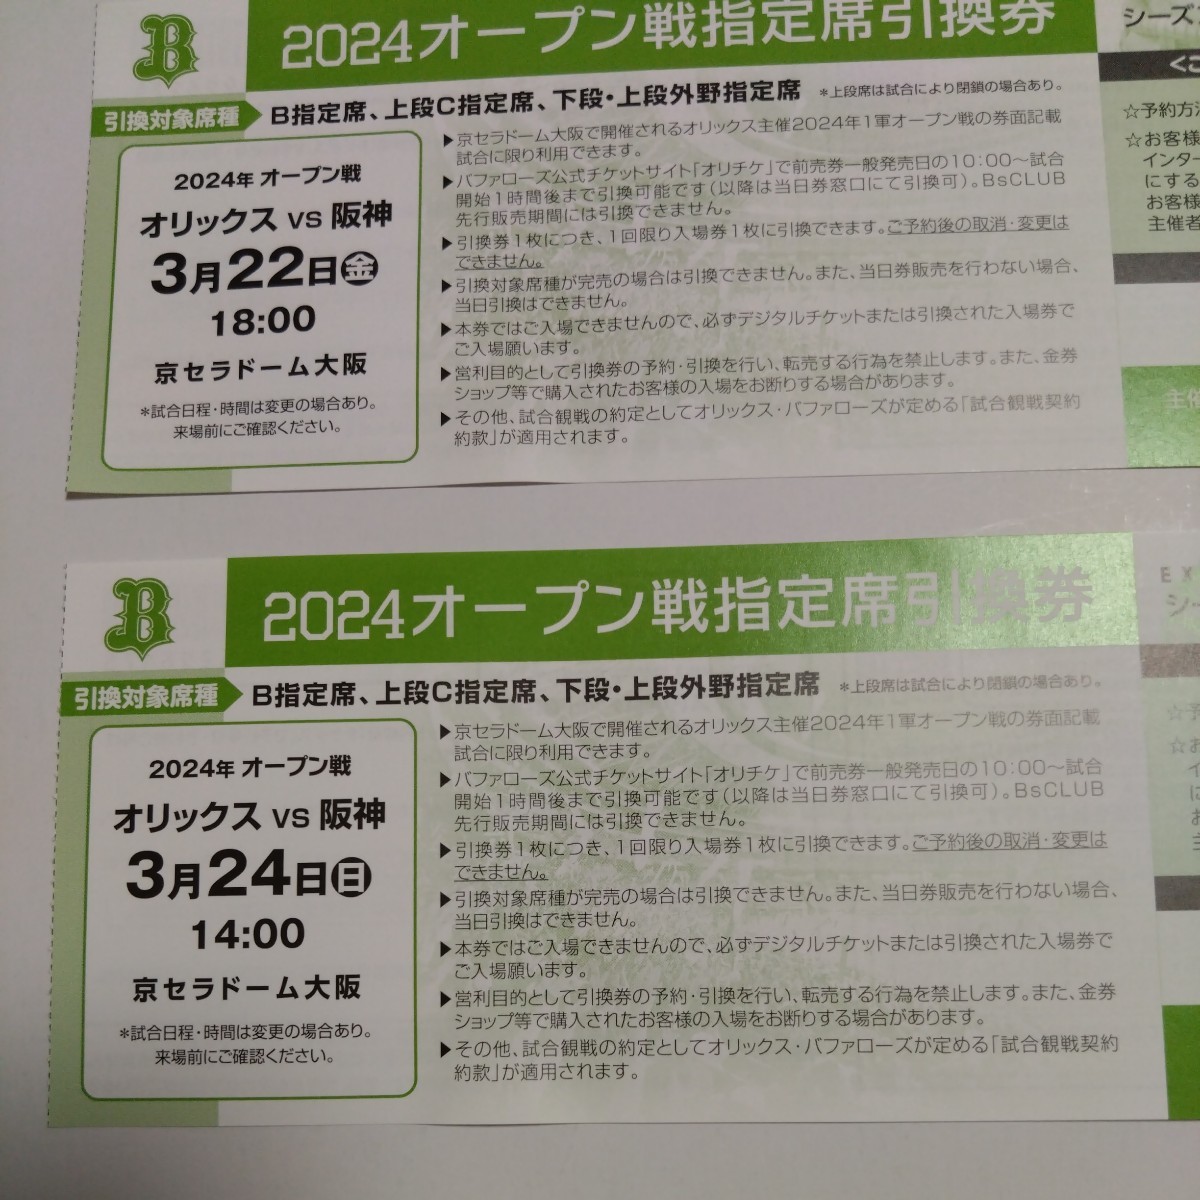 オリックスvs阪神 3月22日,24日オープン戦 指定席引換券2枚_画像1